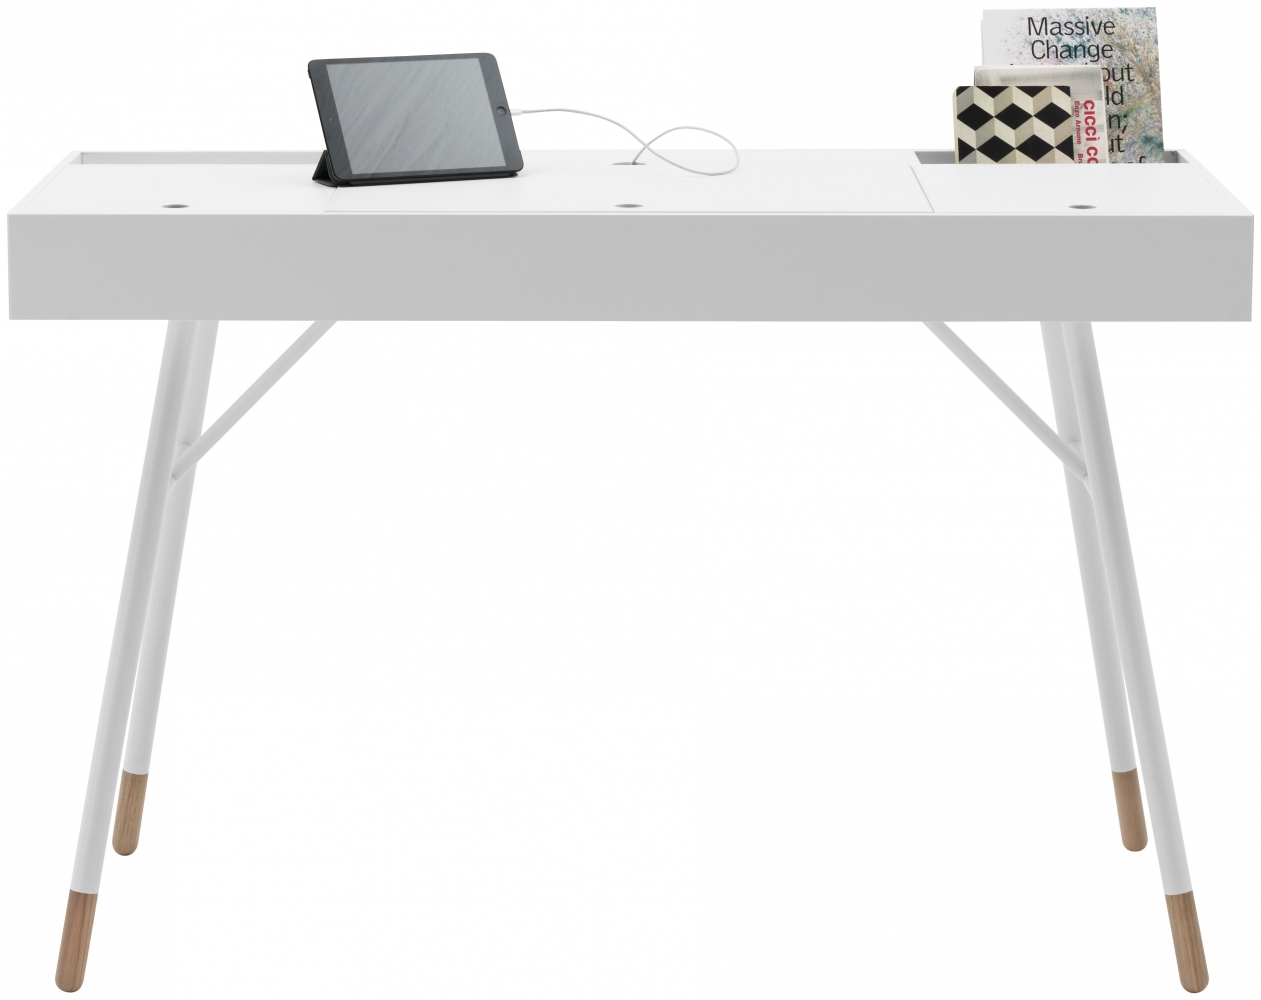 Cupertino pracovní stůl bílý